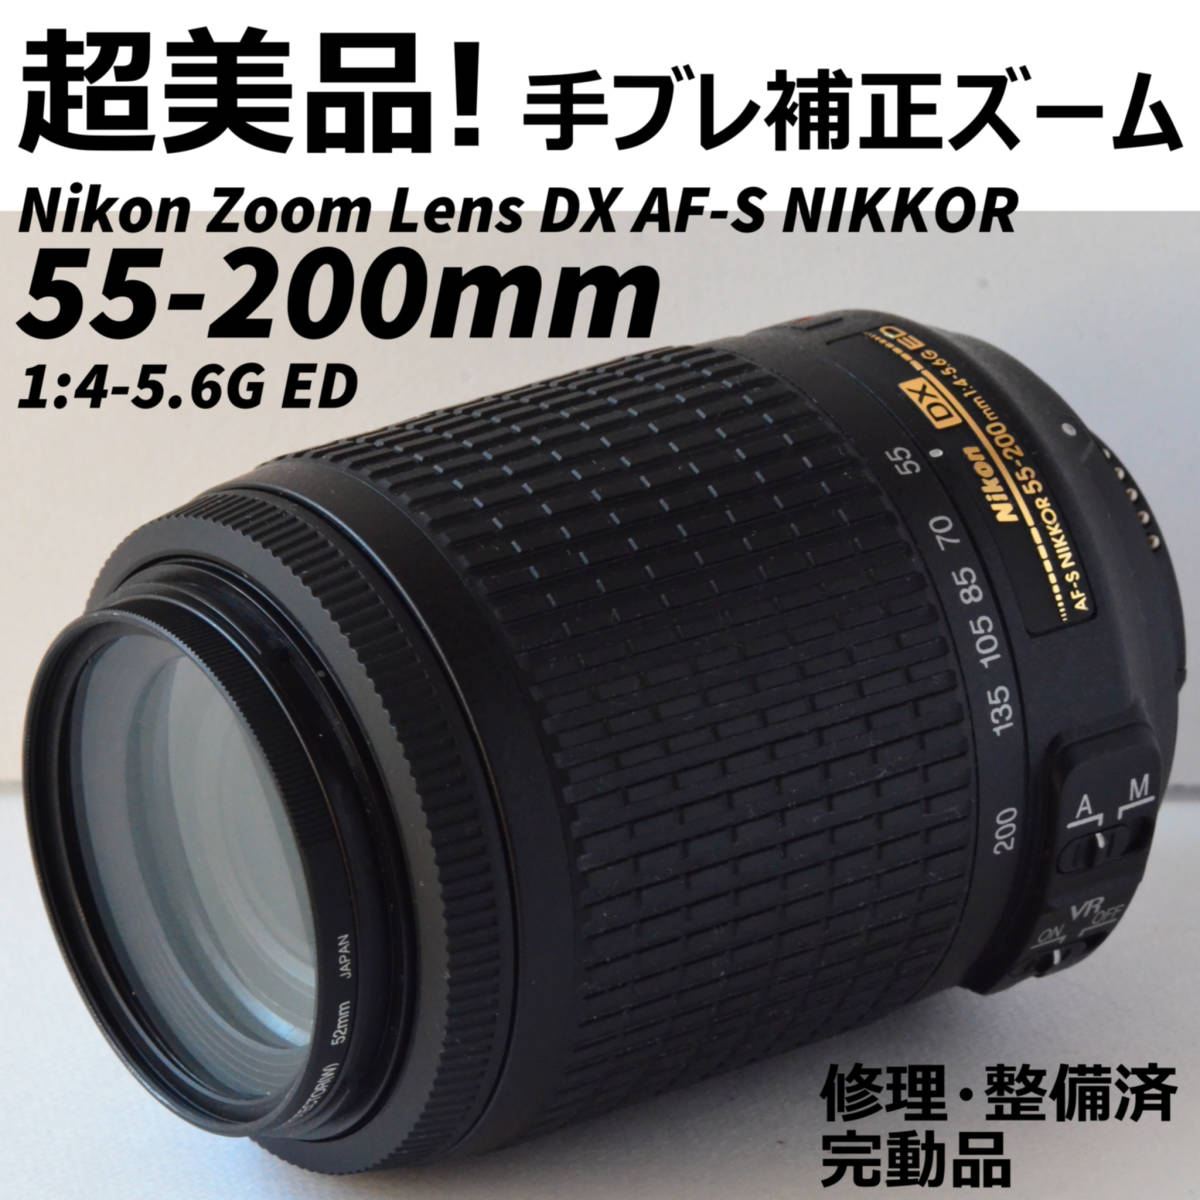 超美品! Nikon ズームレンズDX AF-S NIKKOR 55-200mm 1:4-5.6G ED 修理・整備済完動品| JChere雅虎拍卖代购